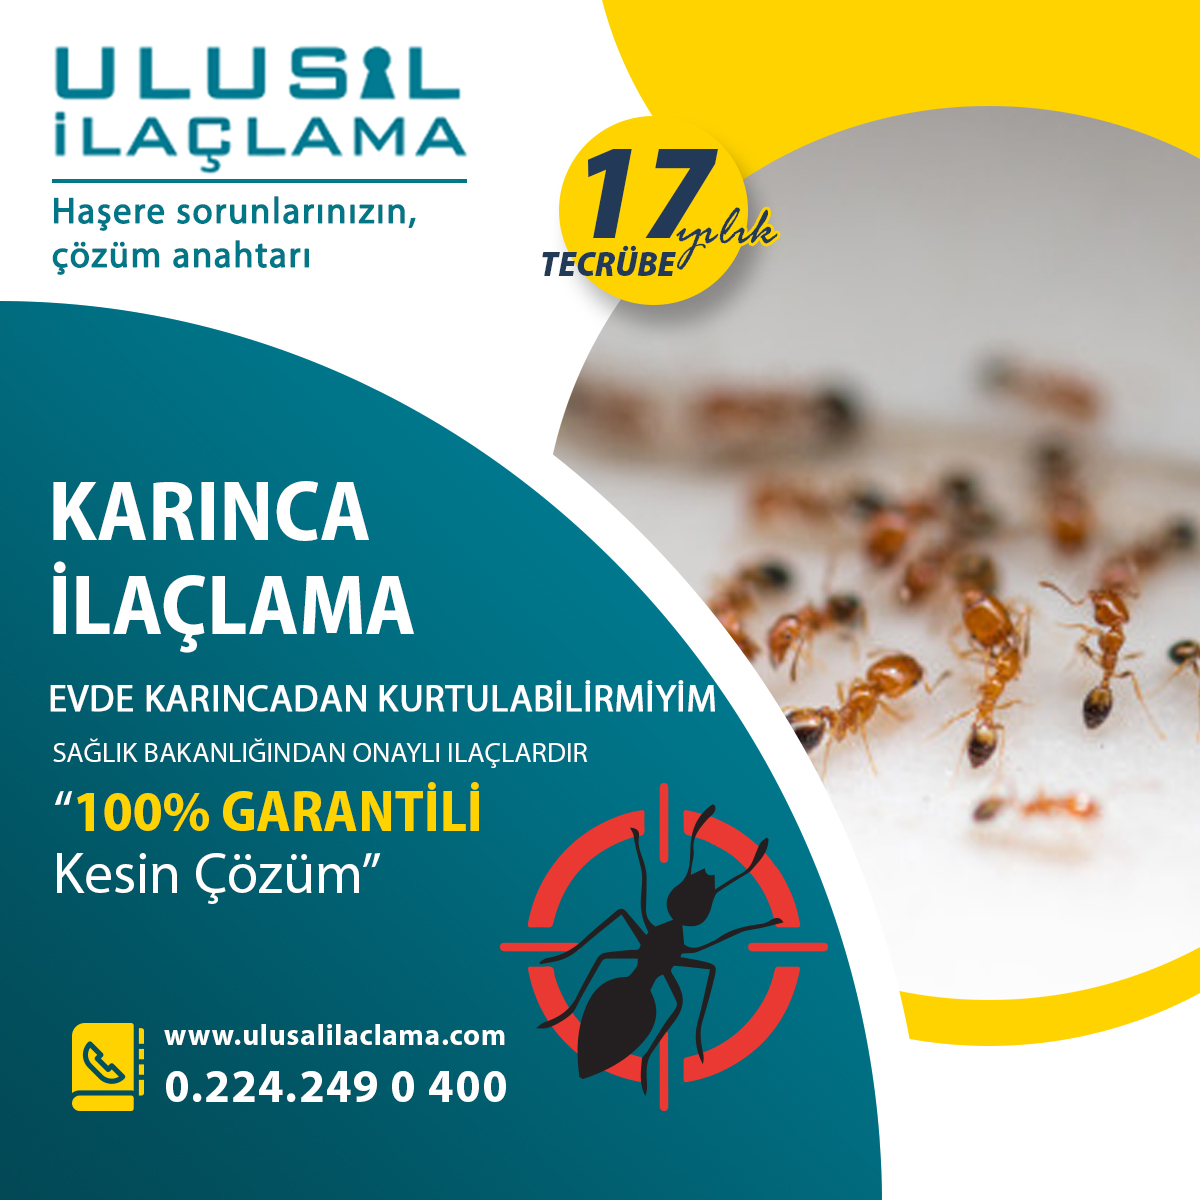 Bursa da ev böcek ilaçlama  BURSA DA EVDİN İÇİNDE KARINCADAN KURTULABİLİRMİYİM